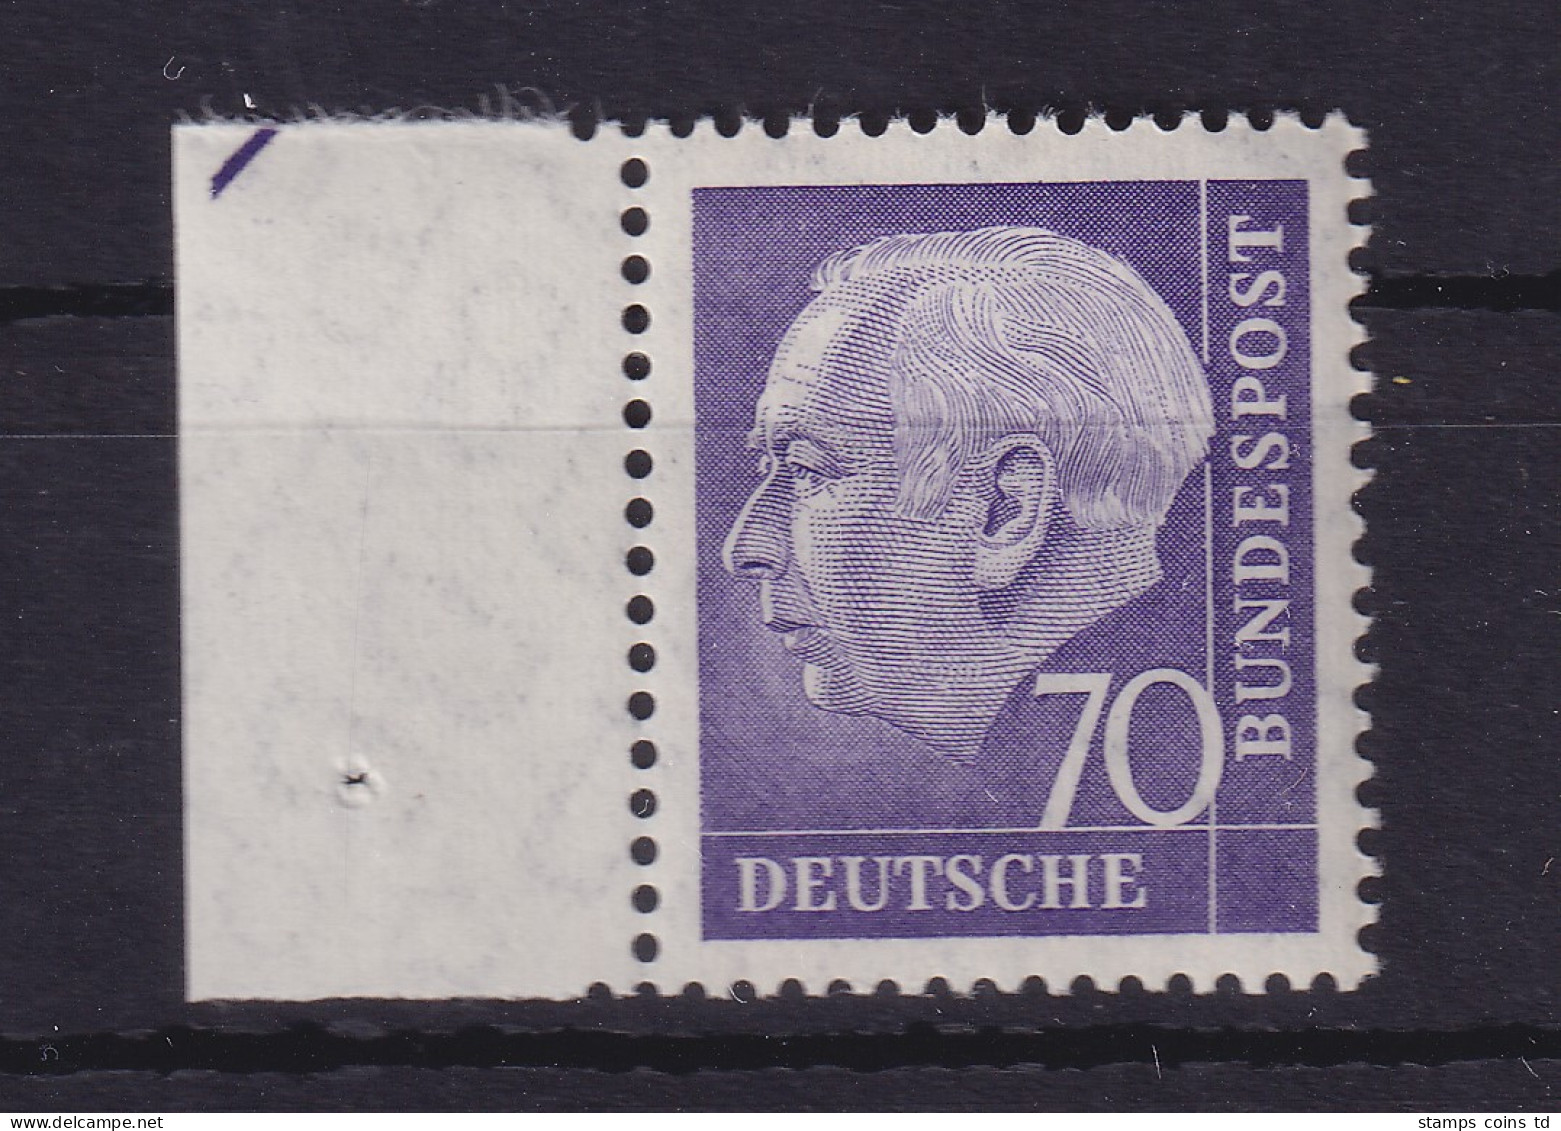 Bundesrepublik 1957 Theodor Heuss 70 Pf Mi.-Nr. 263 X V Randstück Postfrisch ** - Ungebraucht